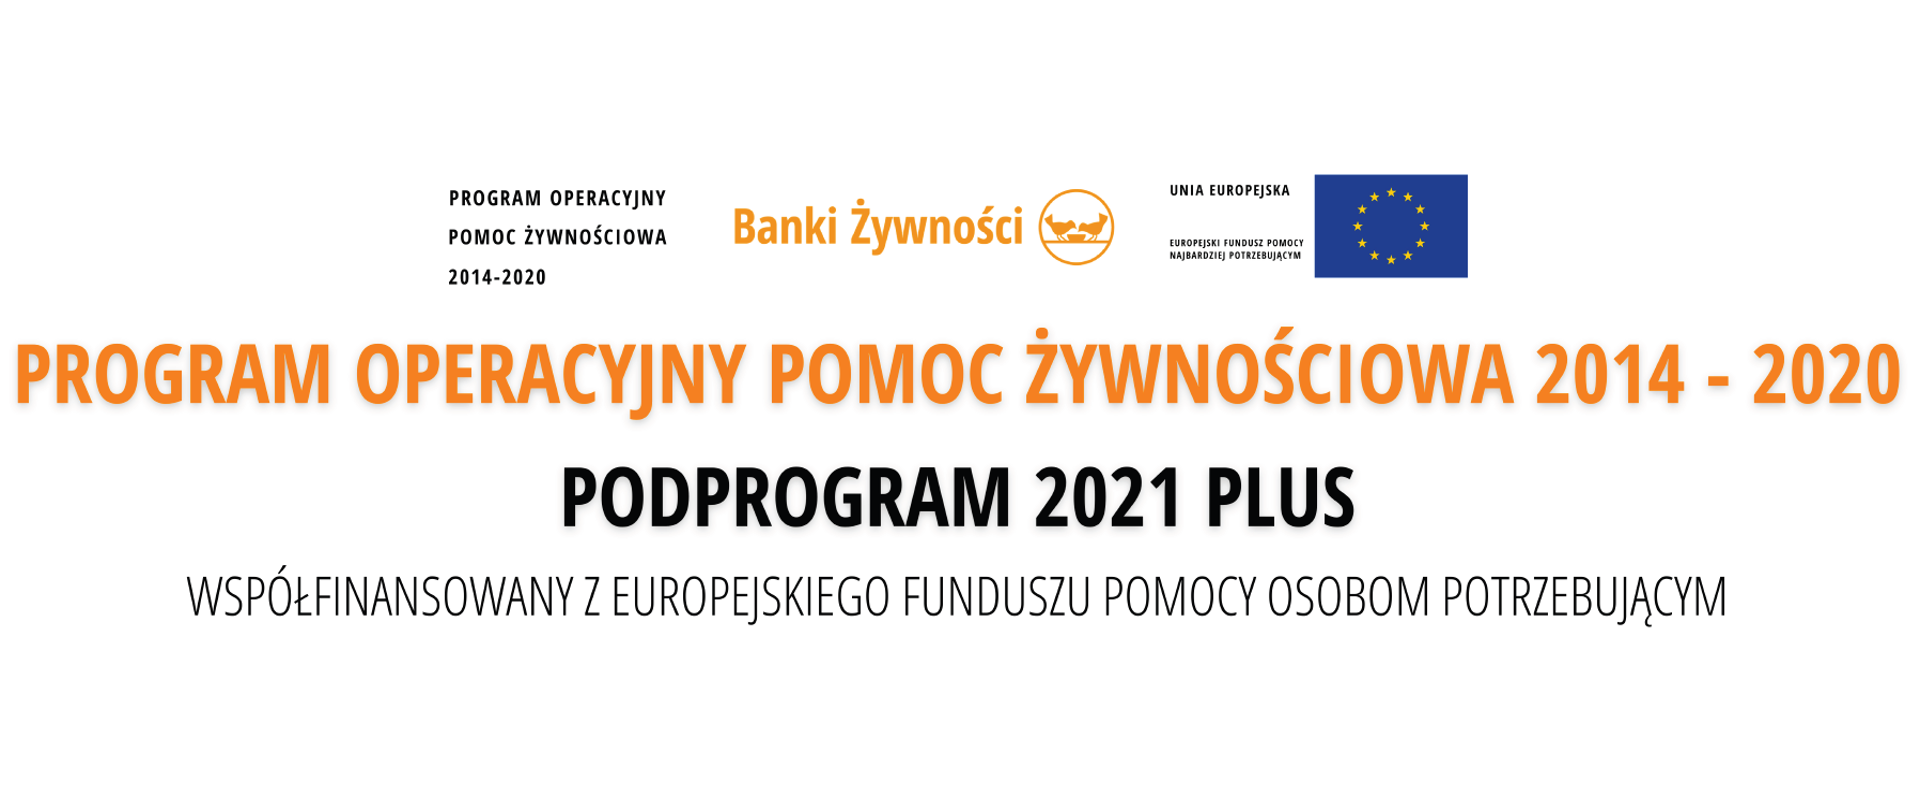 POPŻ 2014-2020 Podprogram 2021 Plus Współfinansowany z Europejskiego Funduszu Pomocy Osobom Potrzebującym